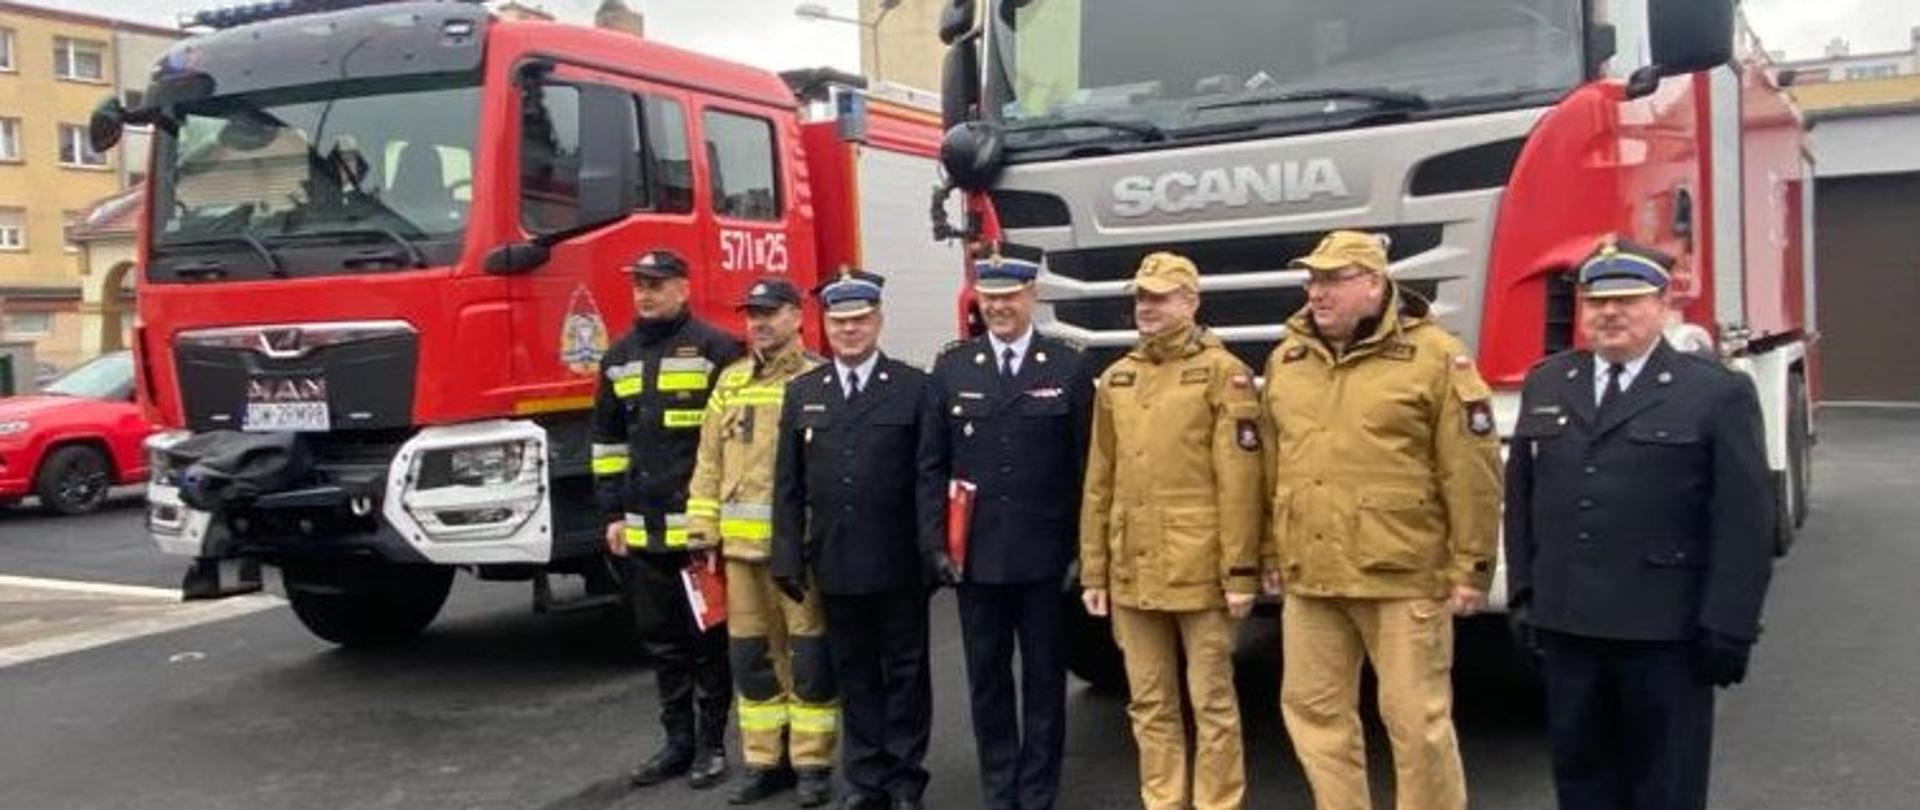 Strażacy - komendanci powiatowi i wojewódzcy na tle przekazywanych pojazdów